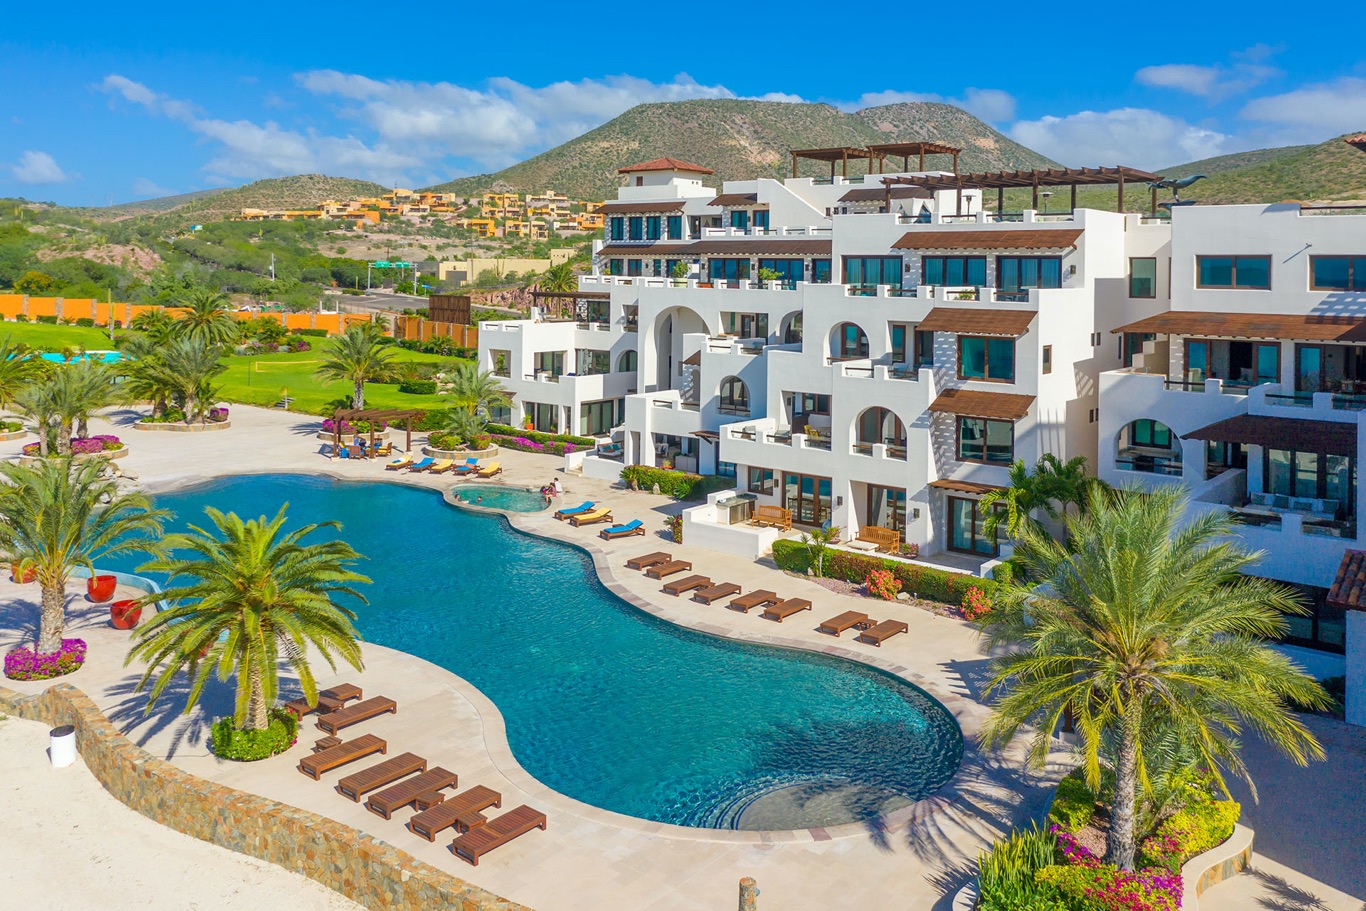 Playa-de-la-paz-The-Agency-Los-Cabos-Real-estate